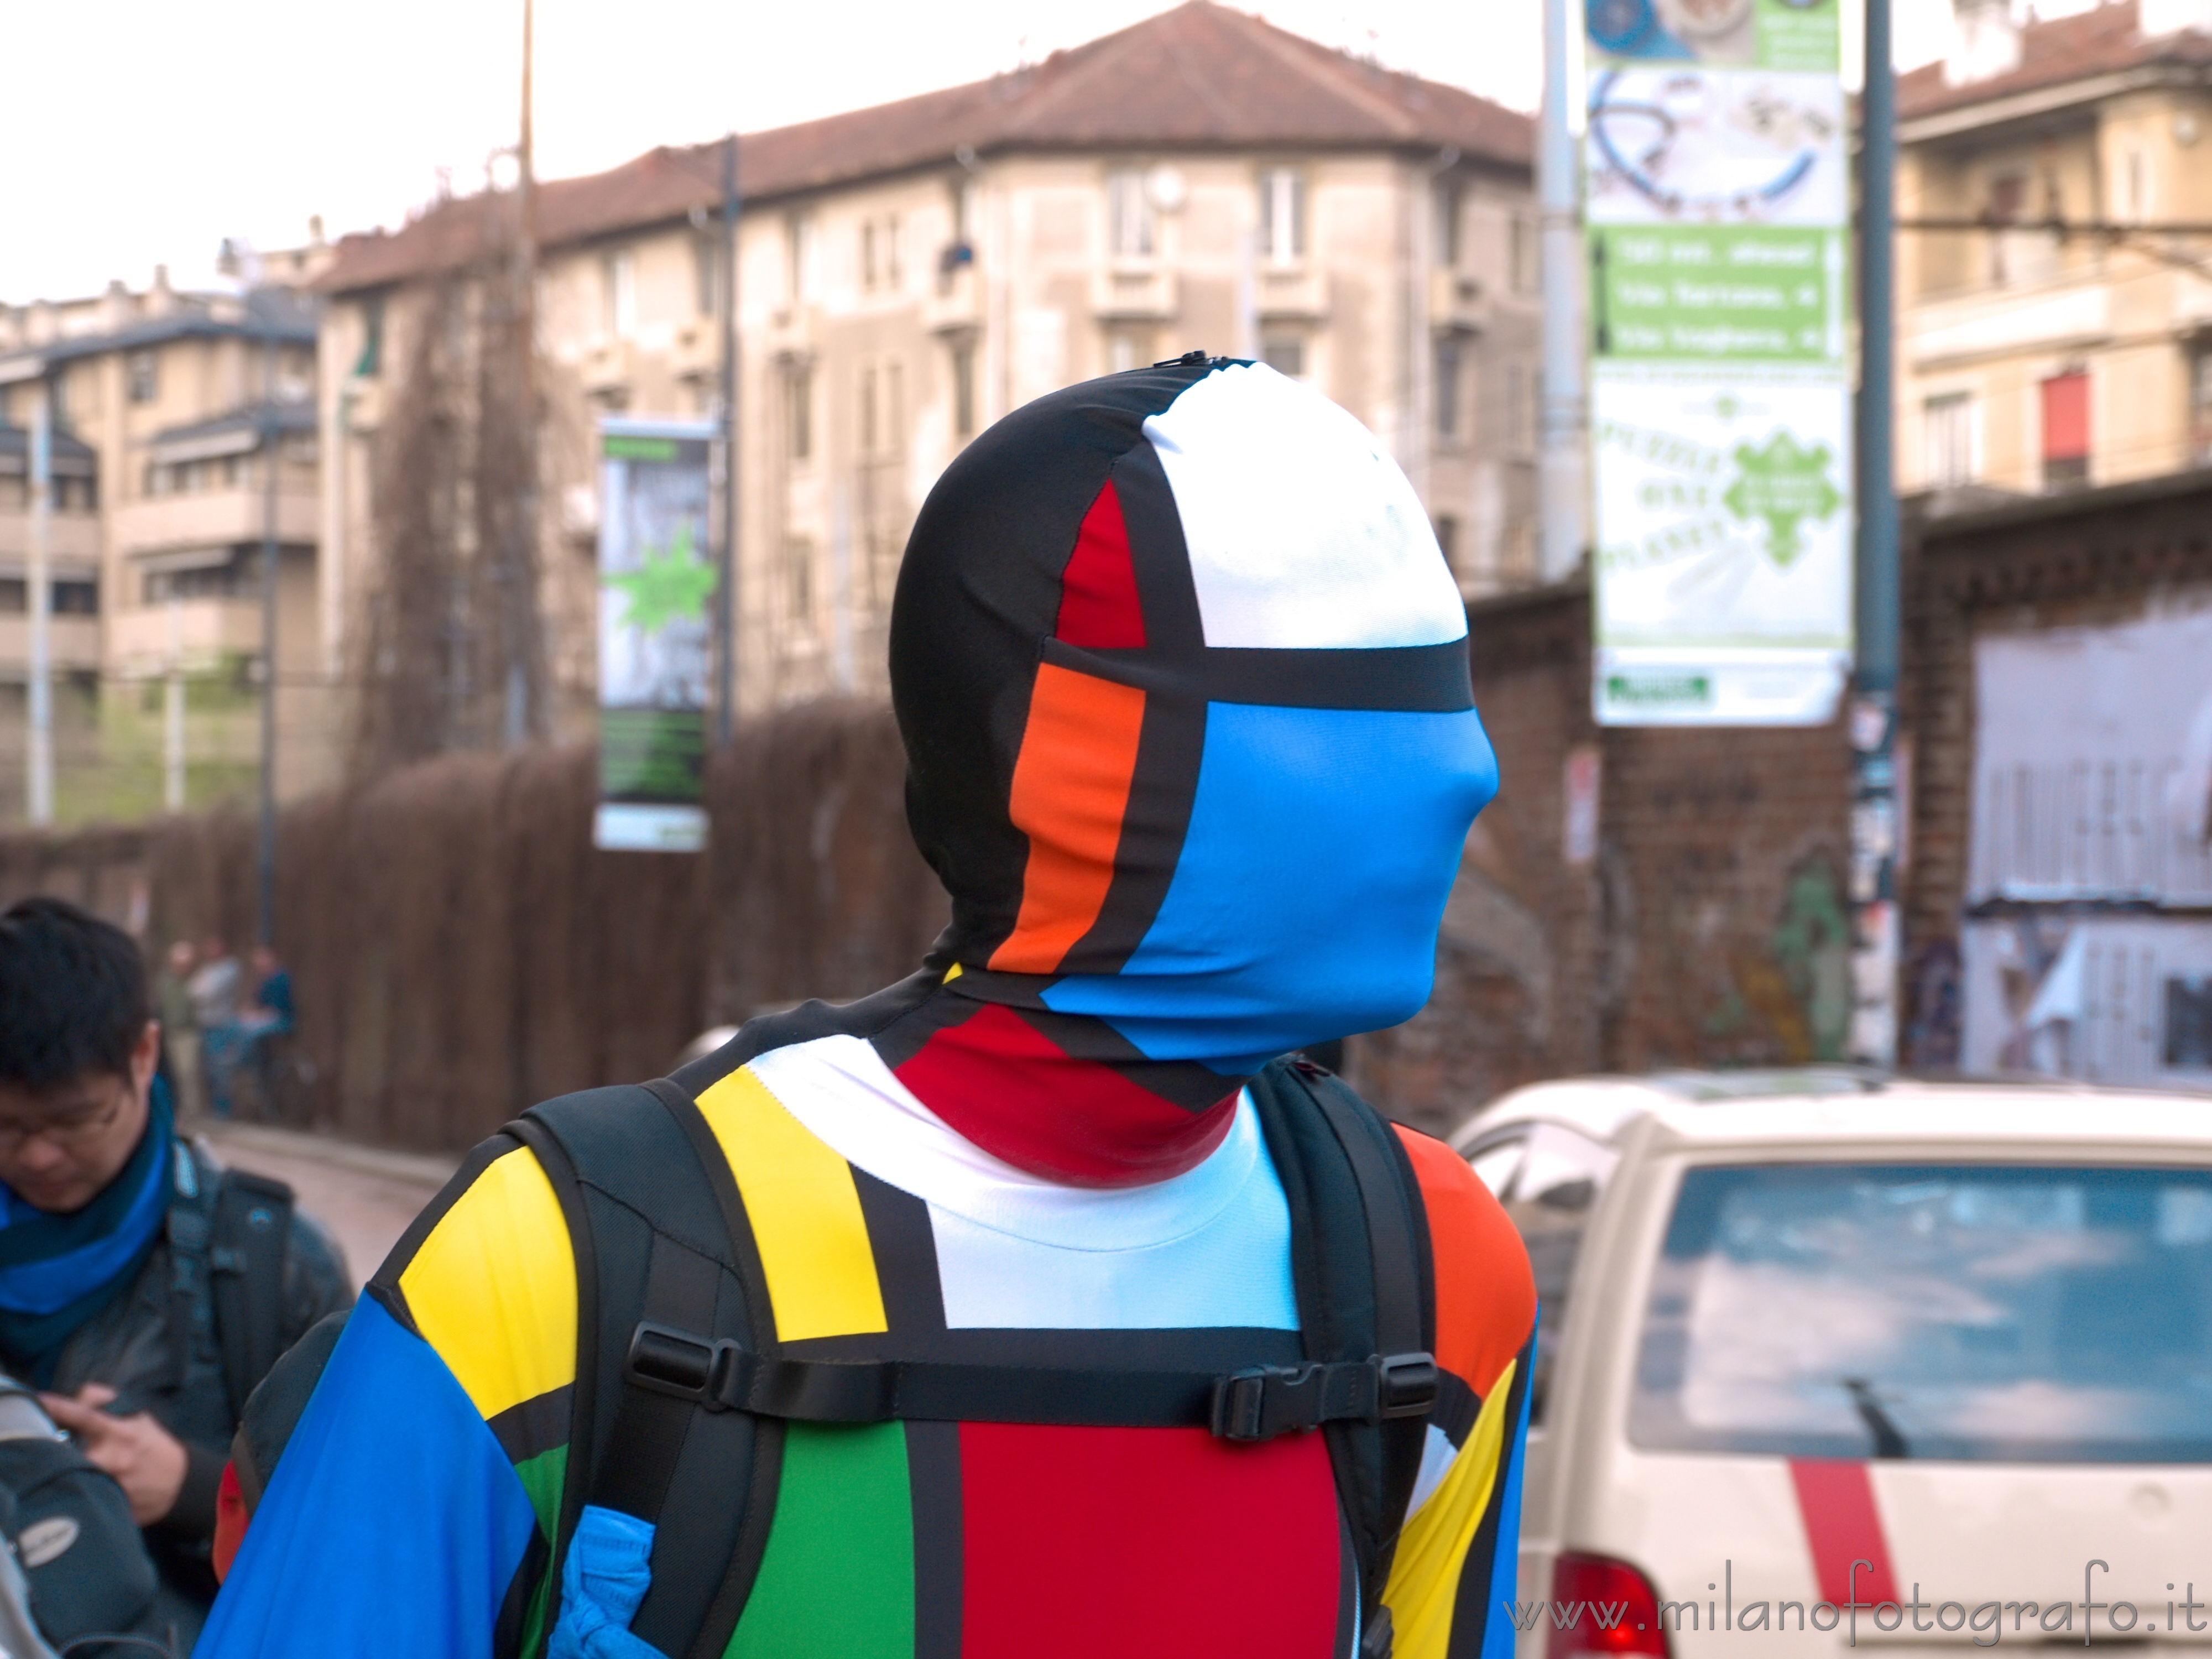 Milano: Uomo pubblicità stile Mondrian al Fuorisalone 2013 - Milano